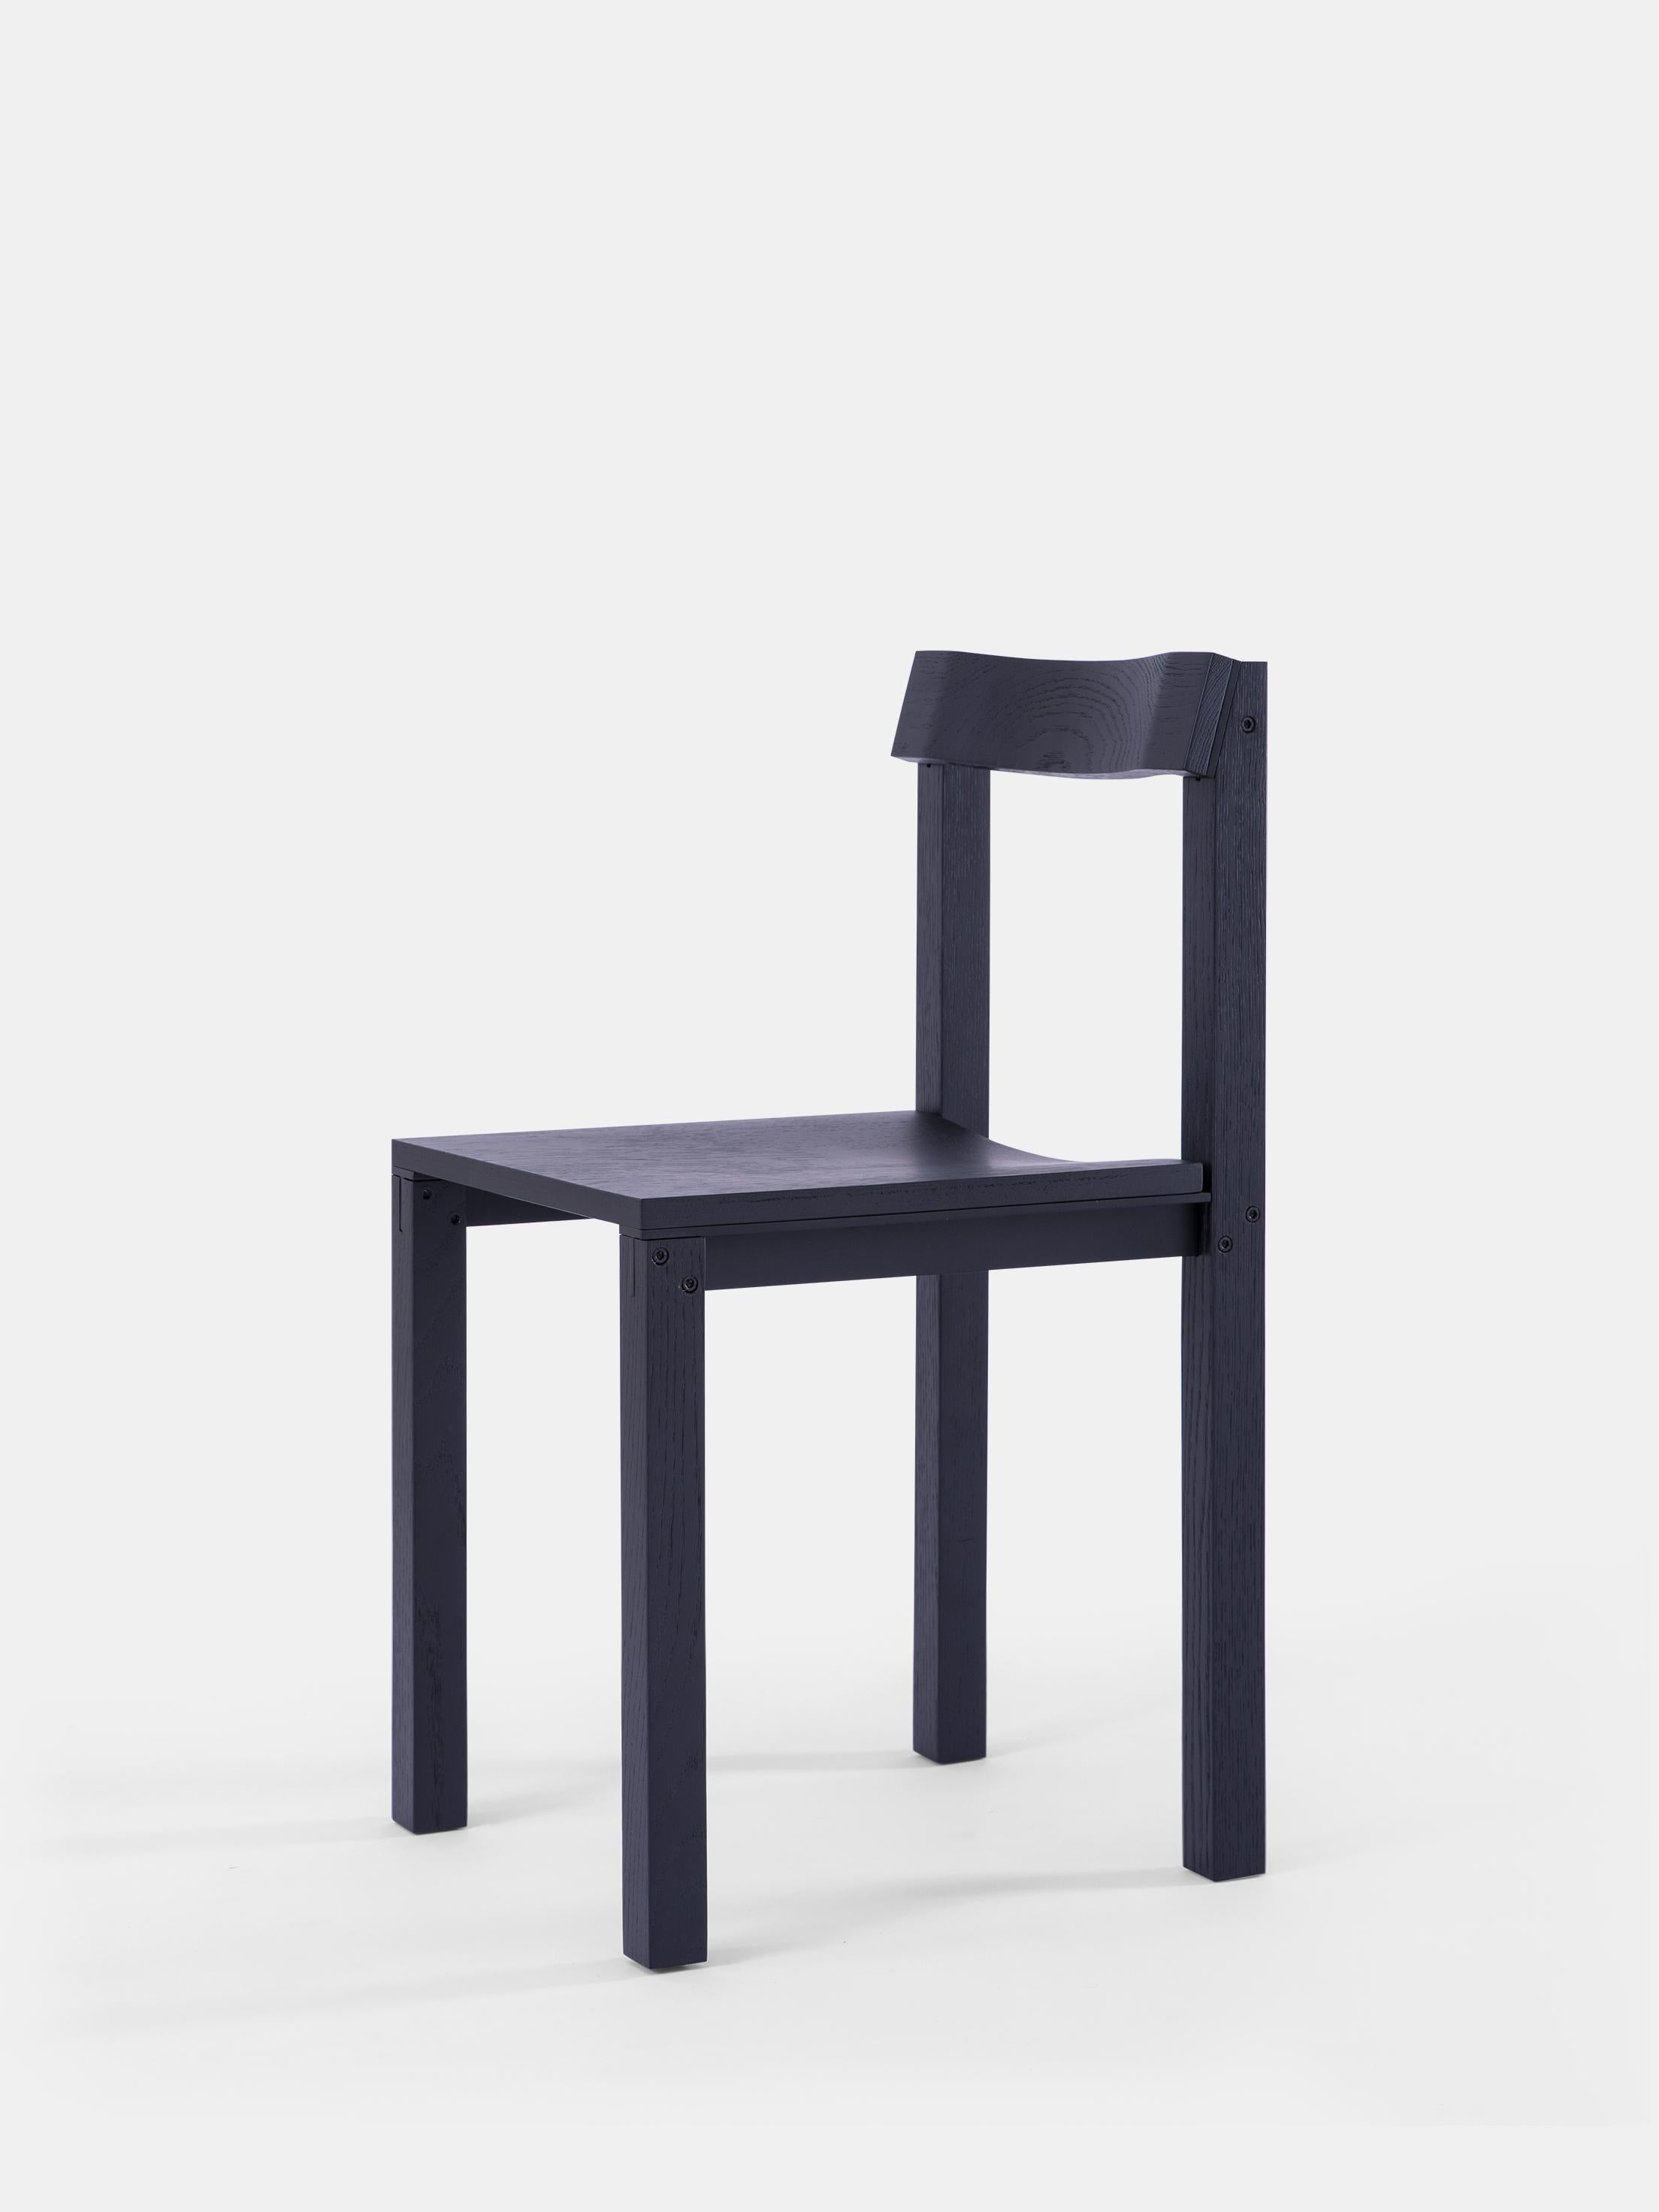 Satz von 8 Stühlen aus schwarzer Eiche von Kann Design
Abmessungen: T 40 x B 44 x H 80 cm.
MATERIALIEN: Schwarz lackierte Eiche, Aluminium.
Erhältlich in anderen Ausführungen.

Der von Léonard Kadid entworfene Stuhl Tal ist aus Aluminium und Holz